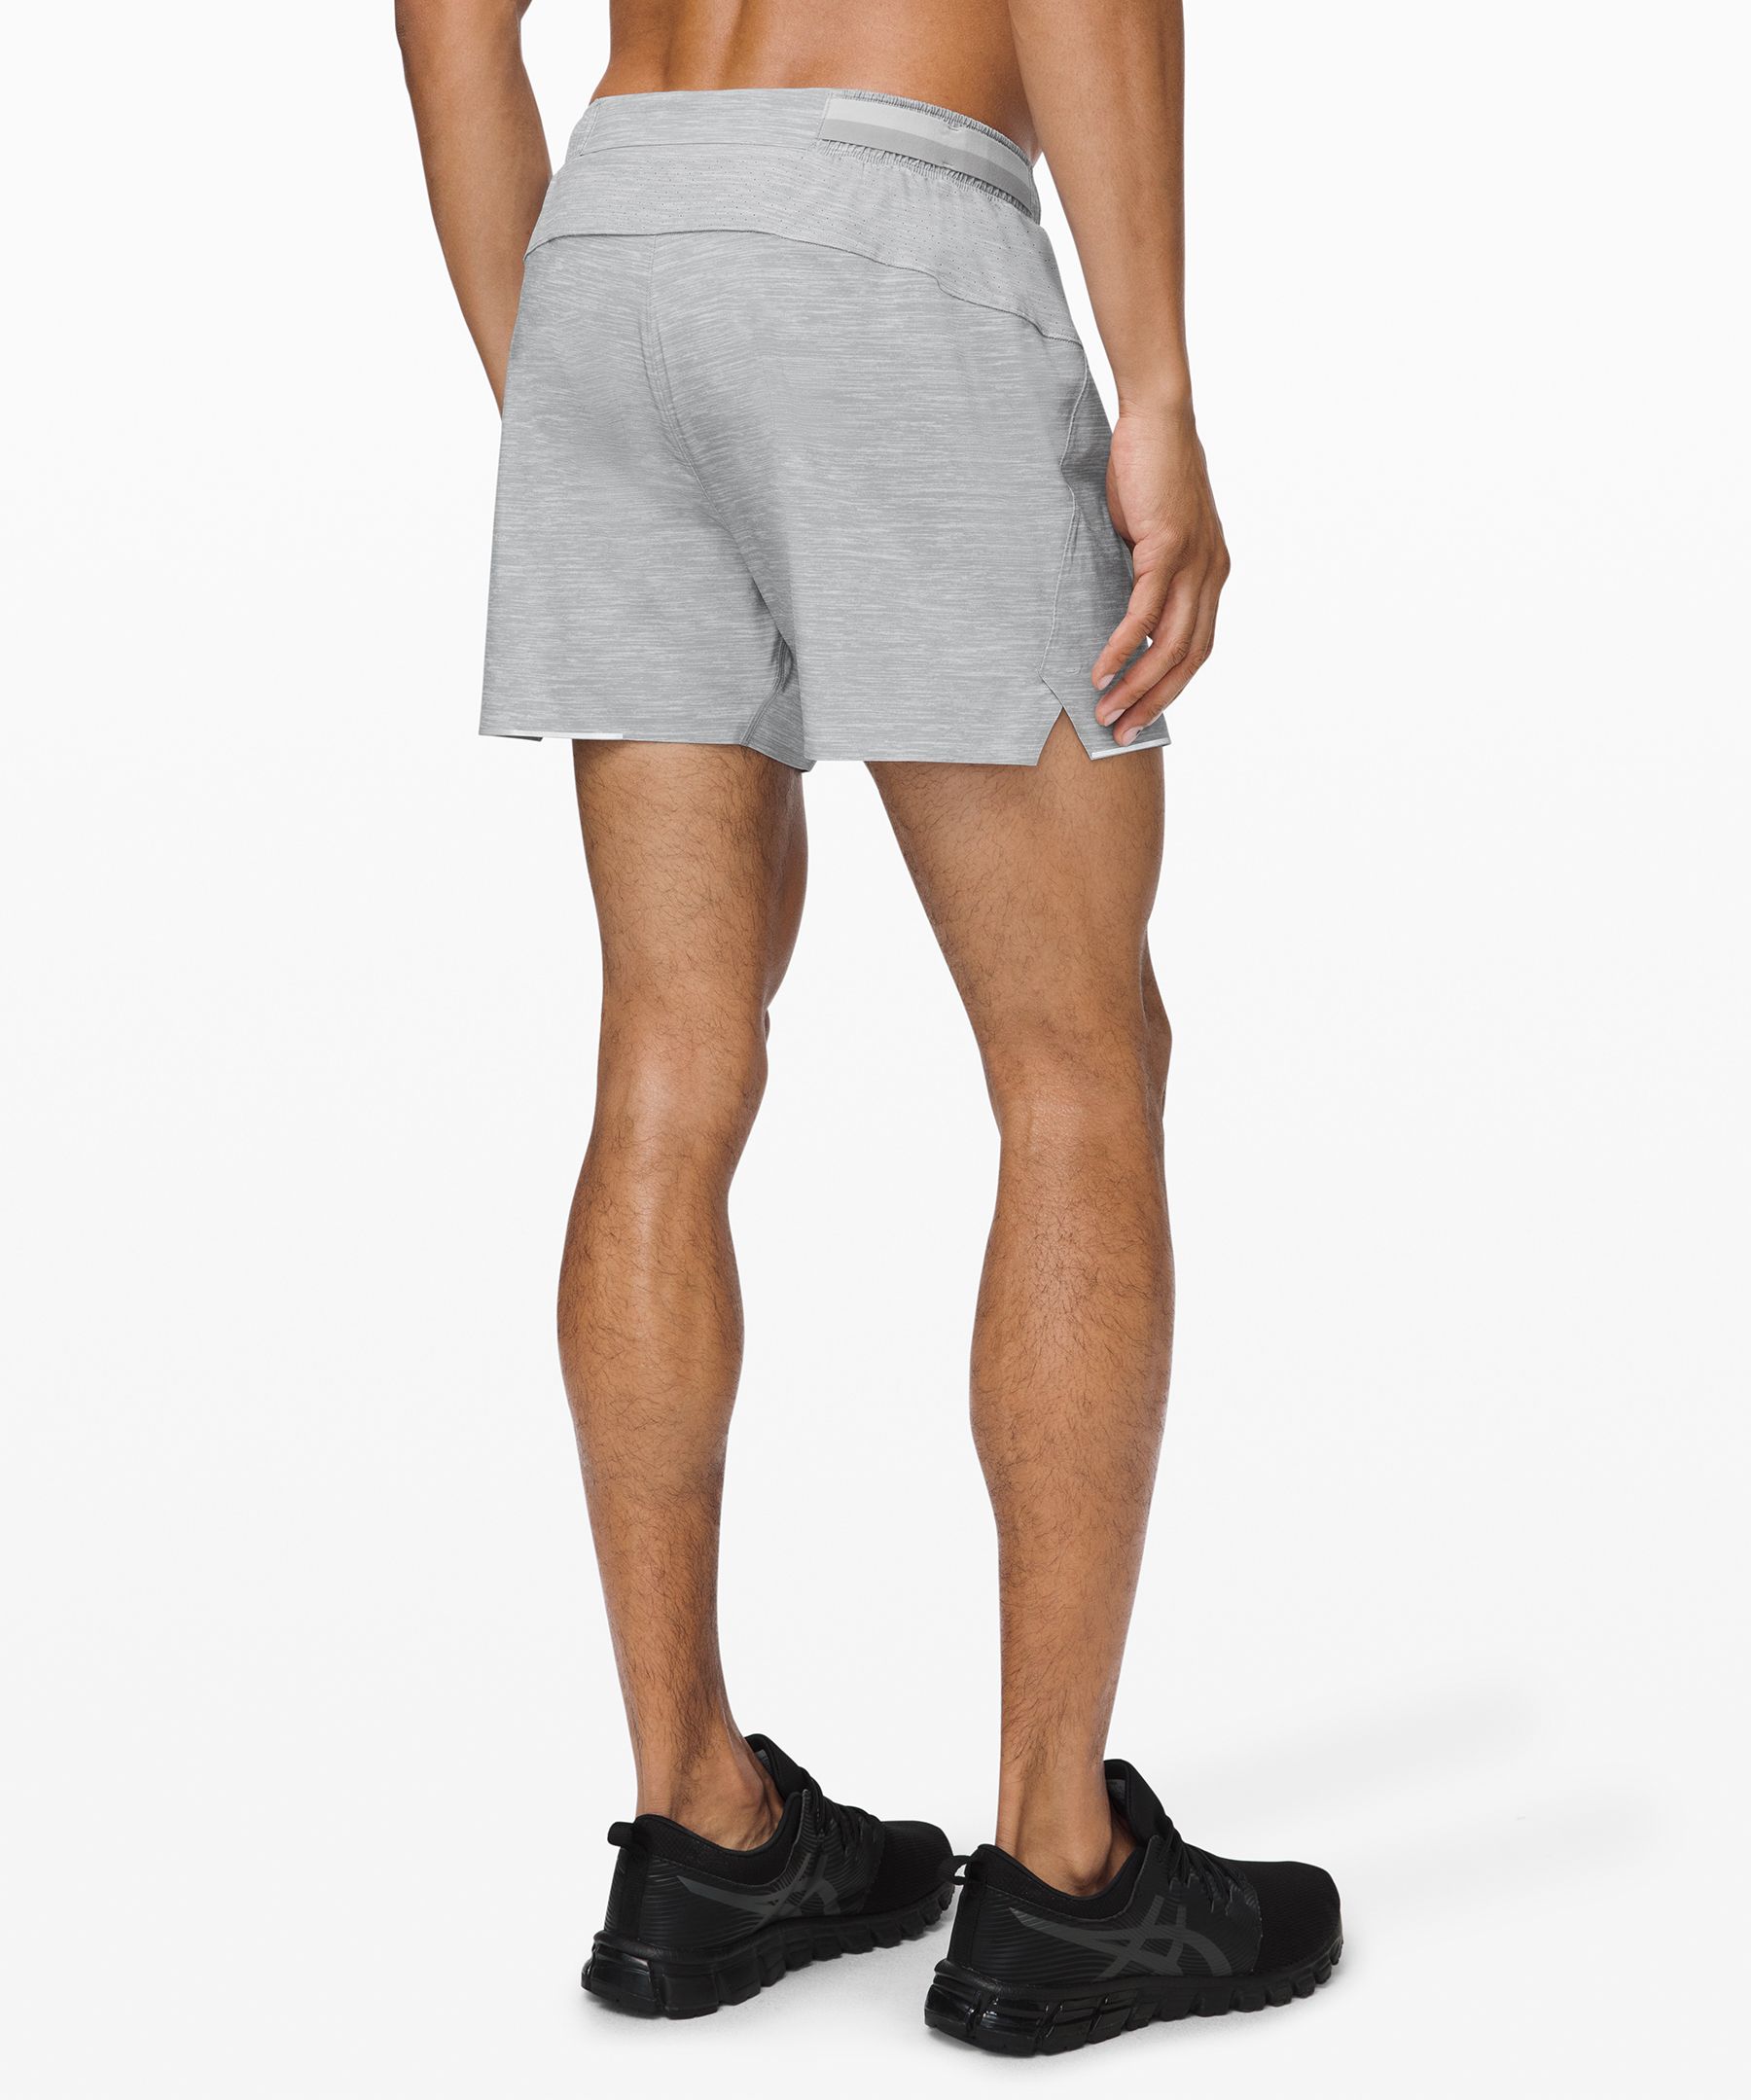 lululemon 4 inch shorts